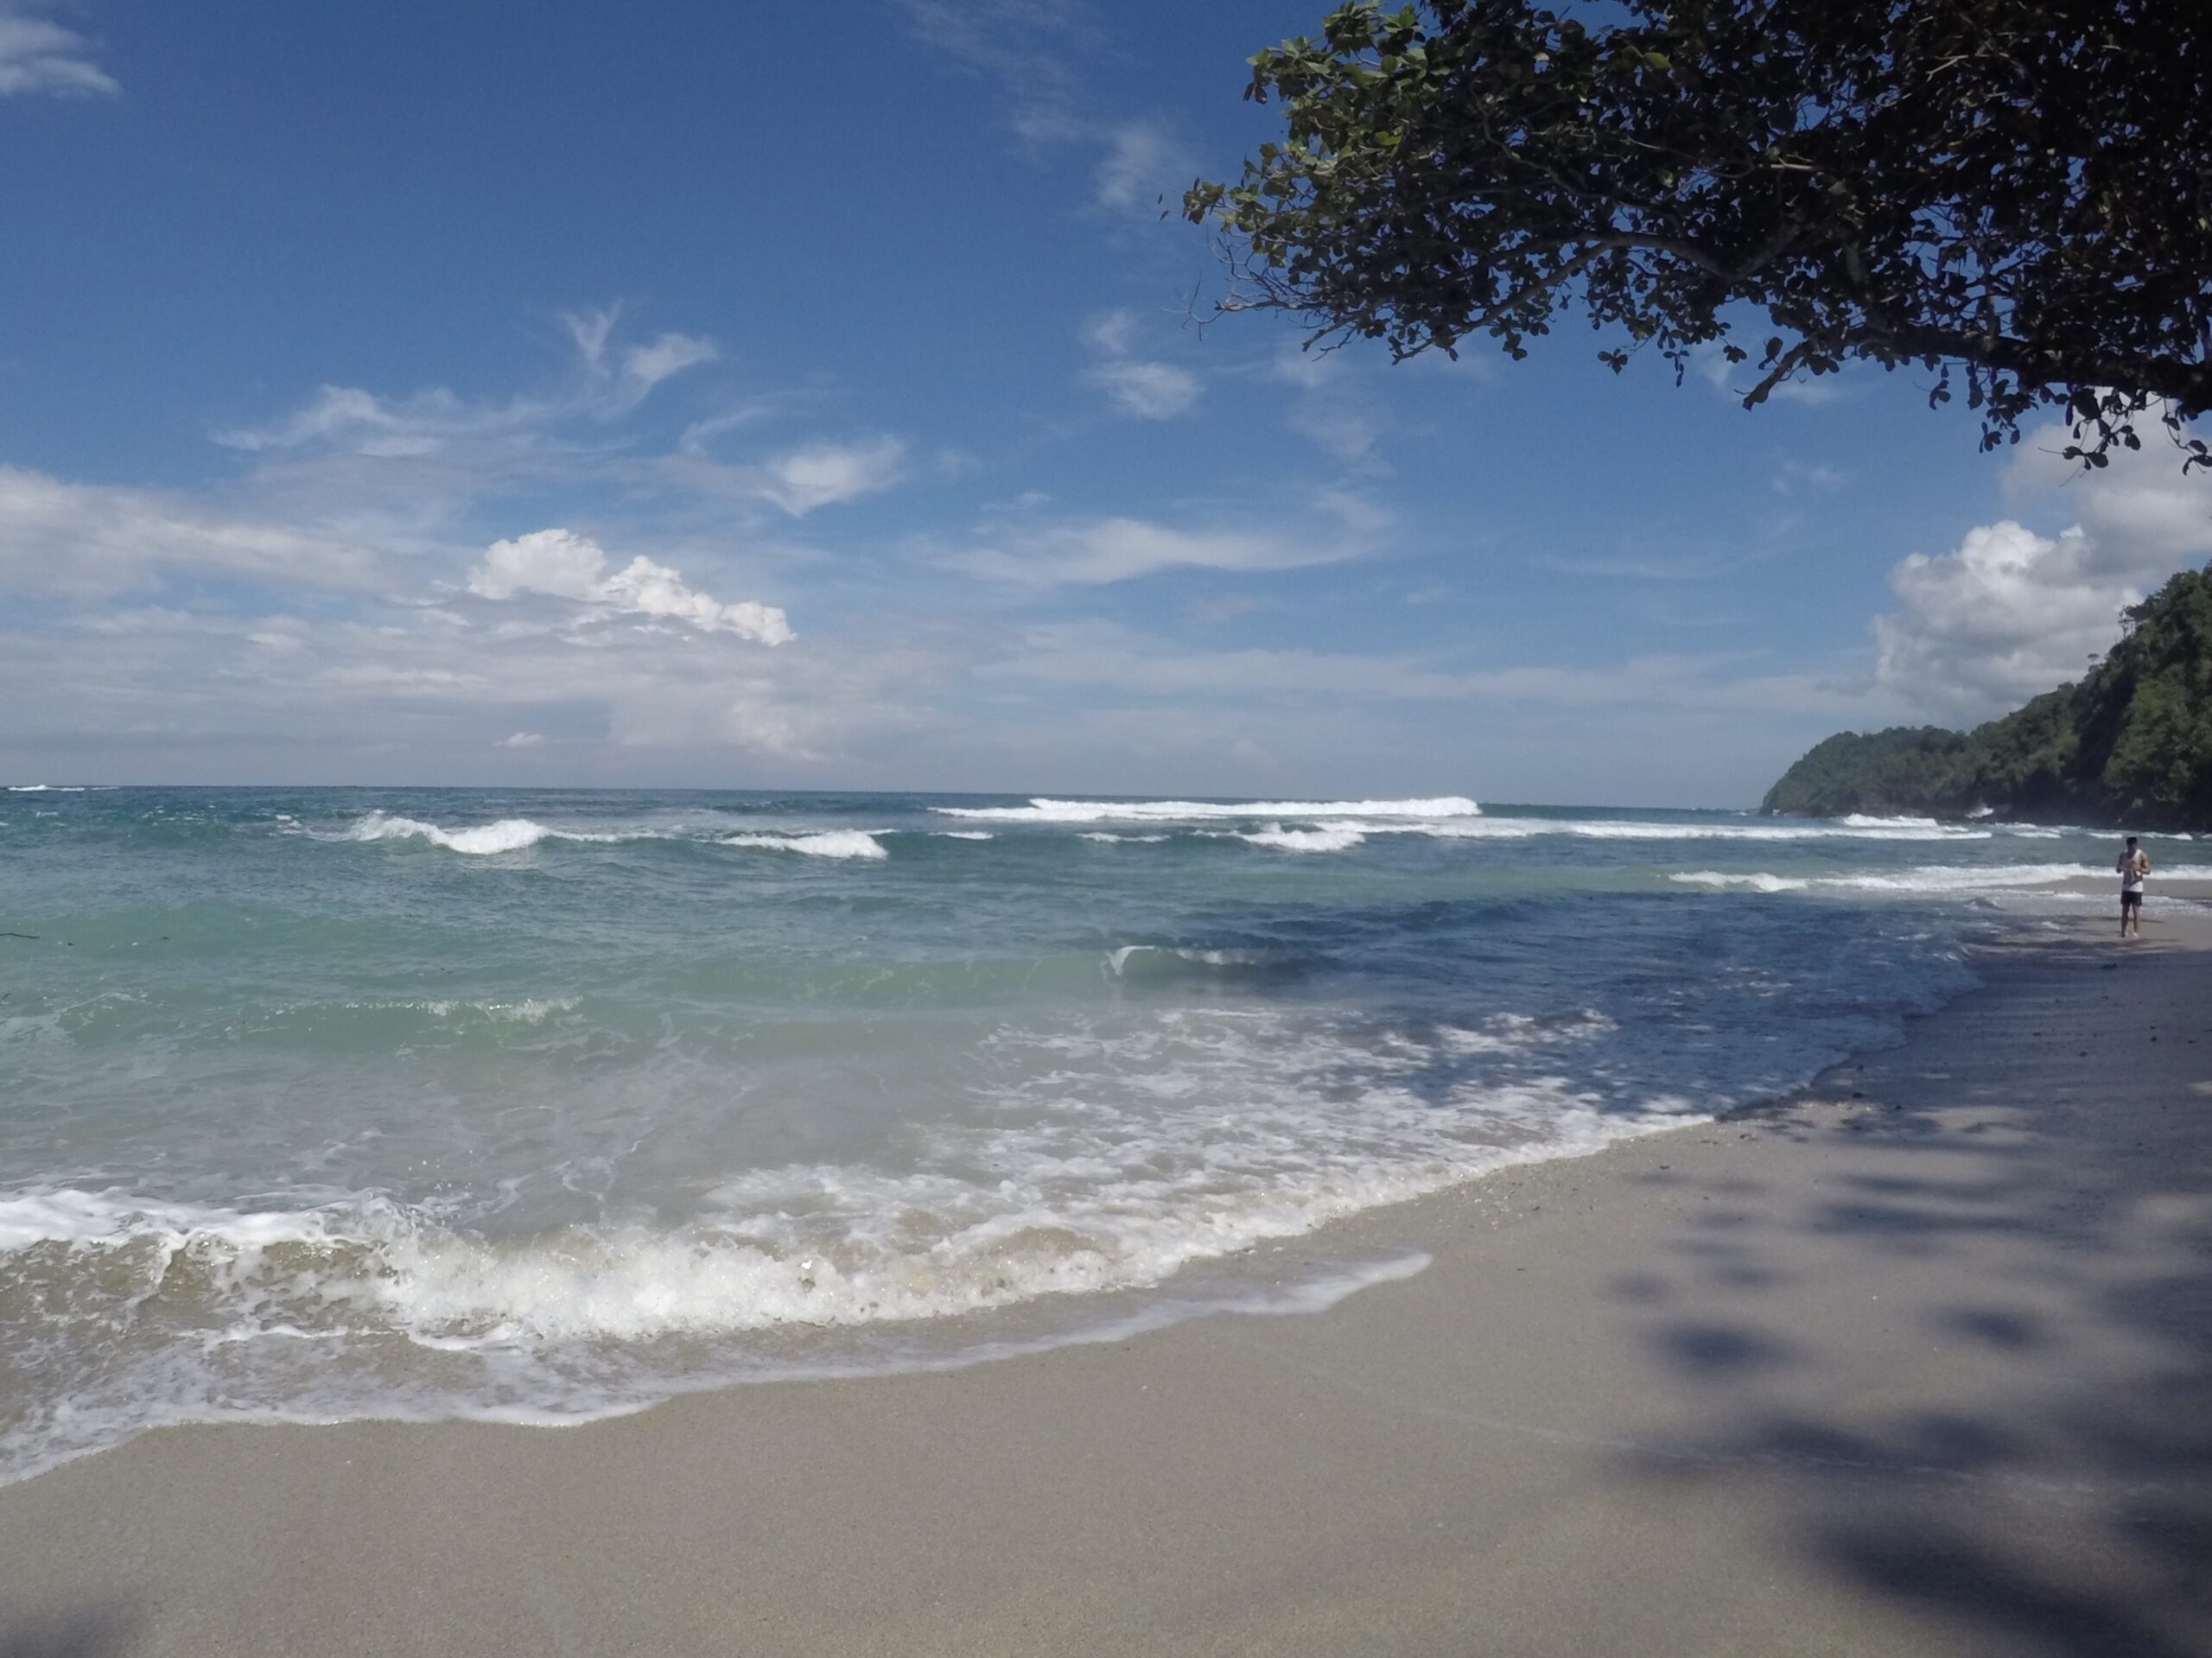 Pesona Keindahan Wisata Pantai Kalipat di Nusakambangan Cilacap Jawa Tengah